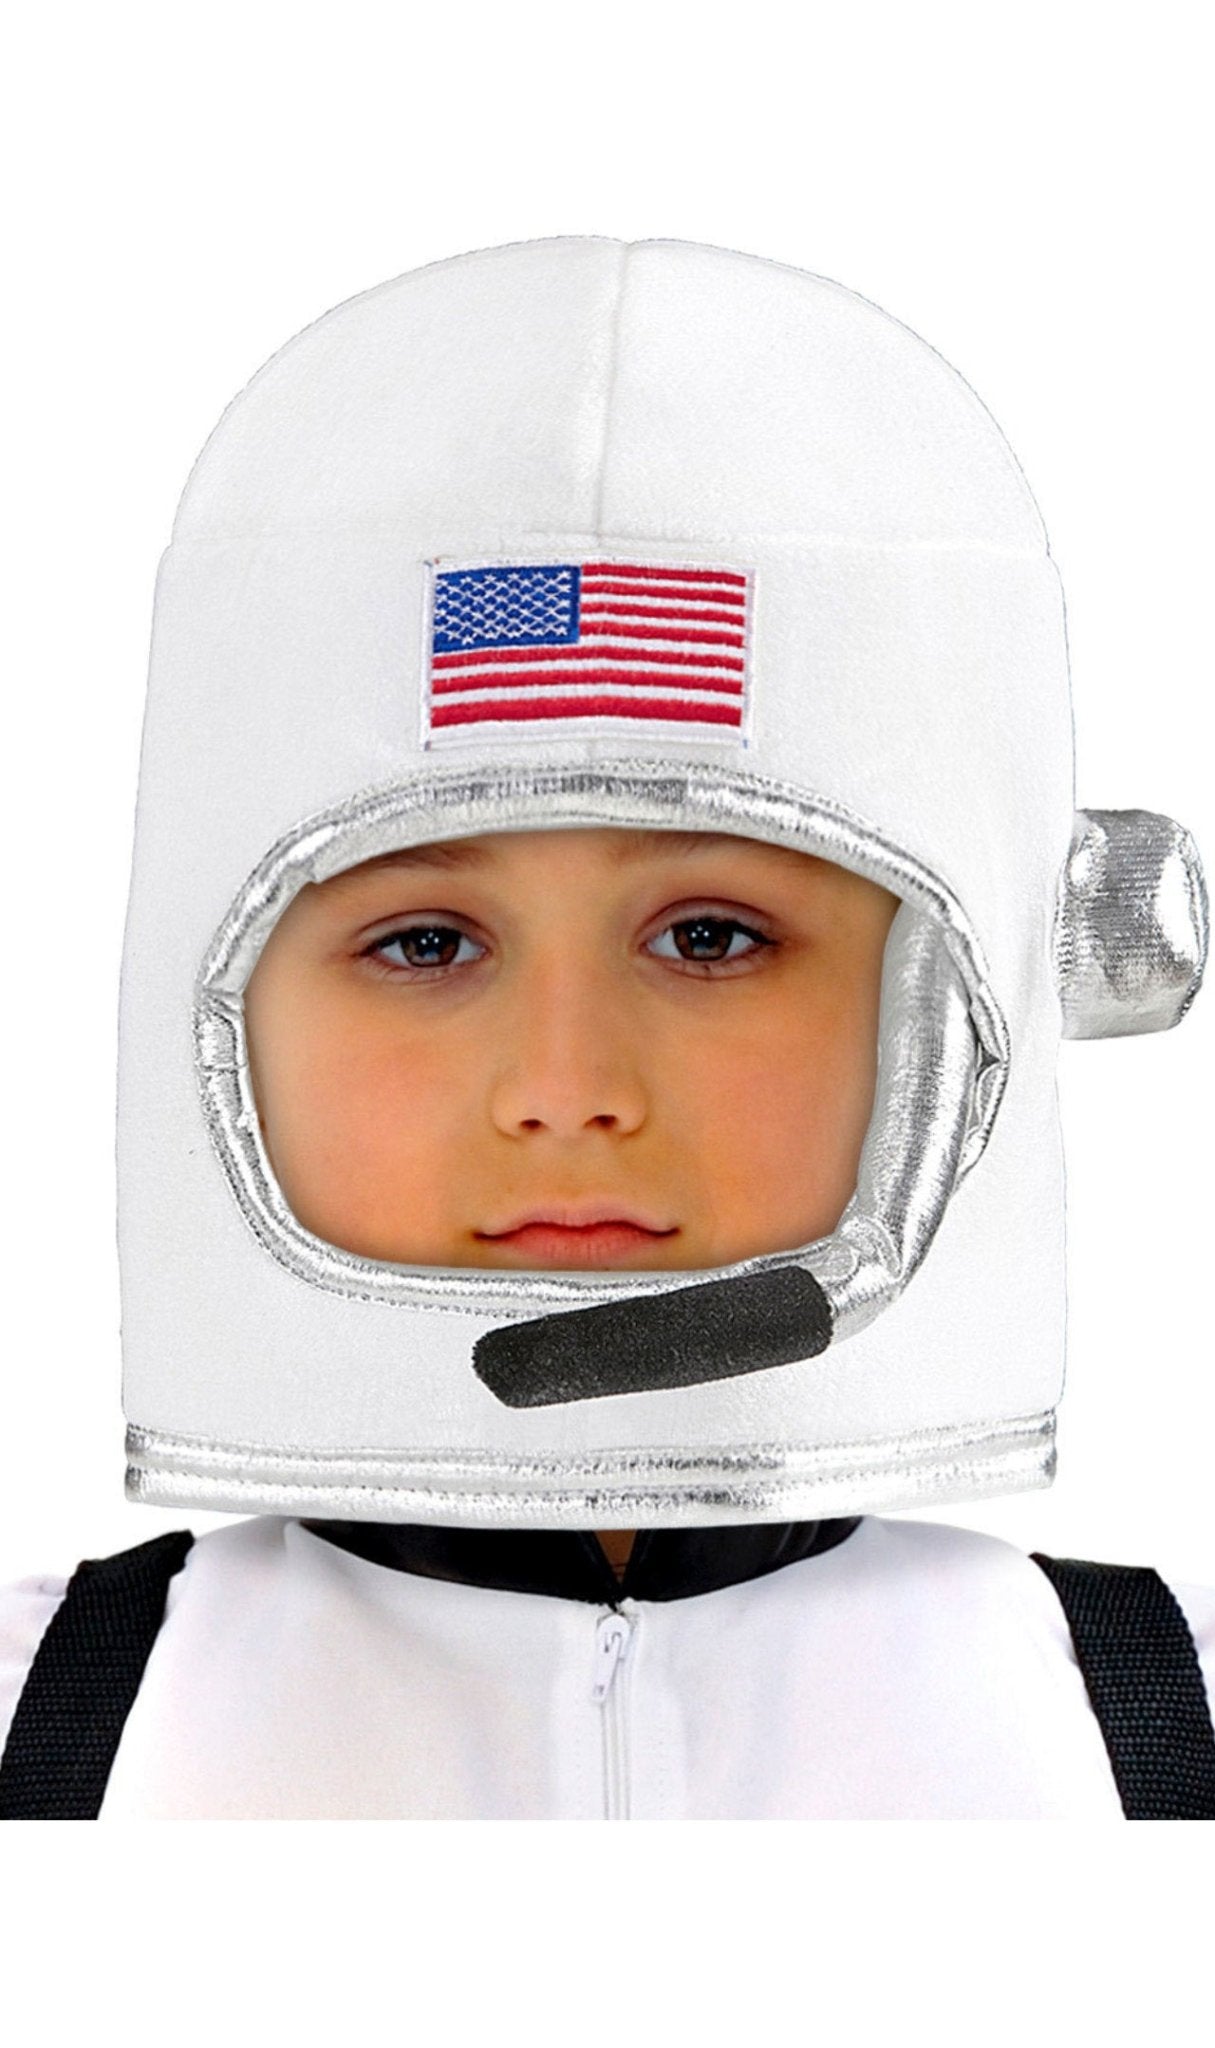 Capacete de Astronauta Espacial para criança